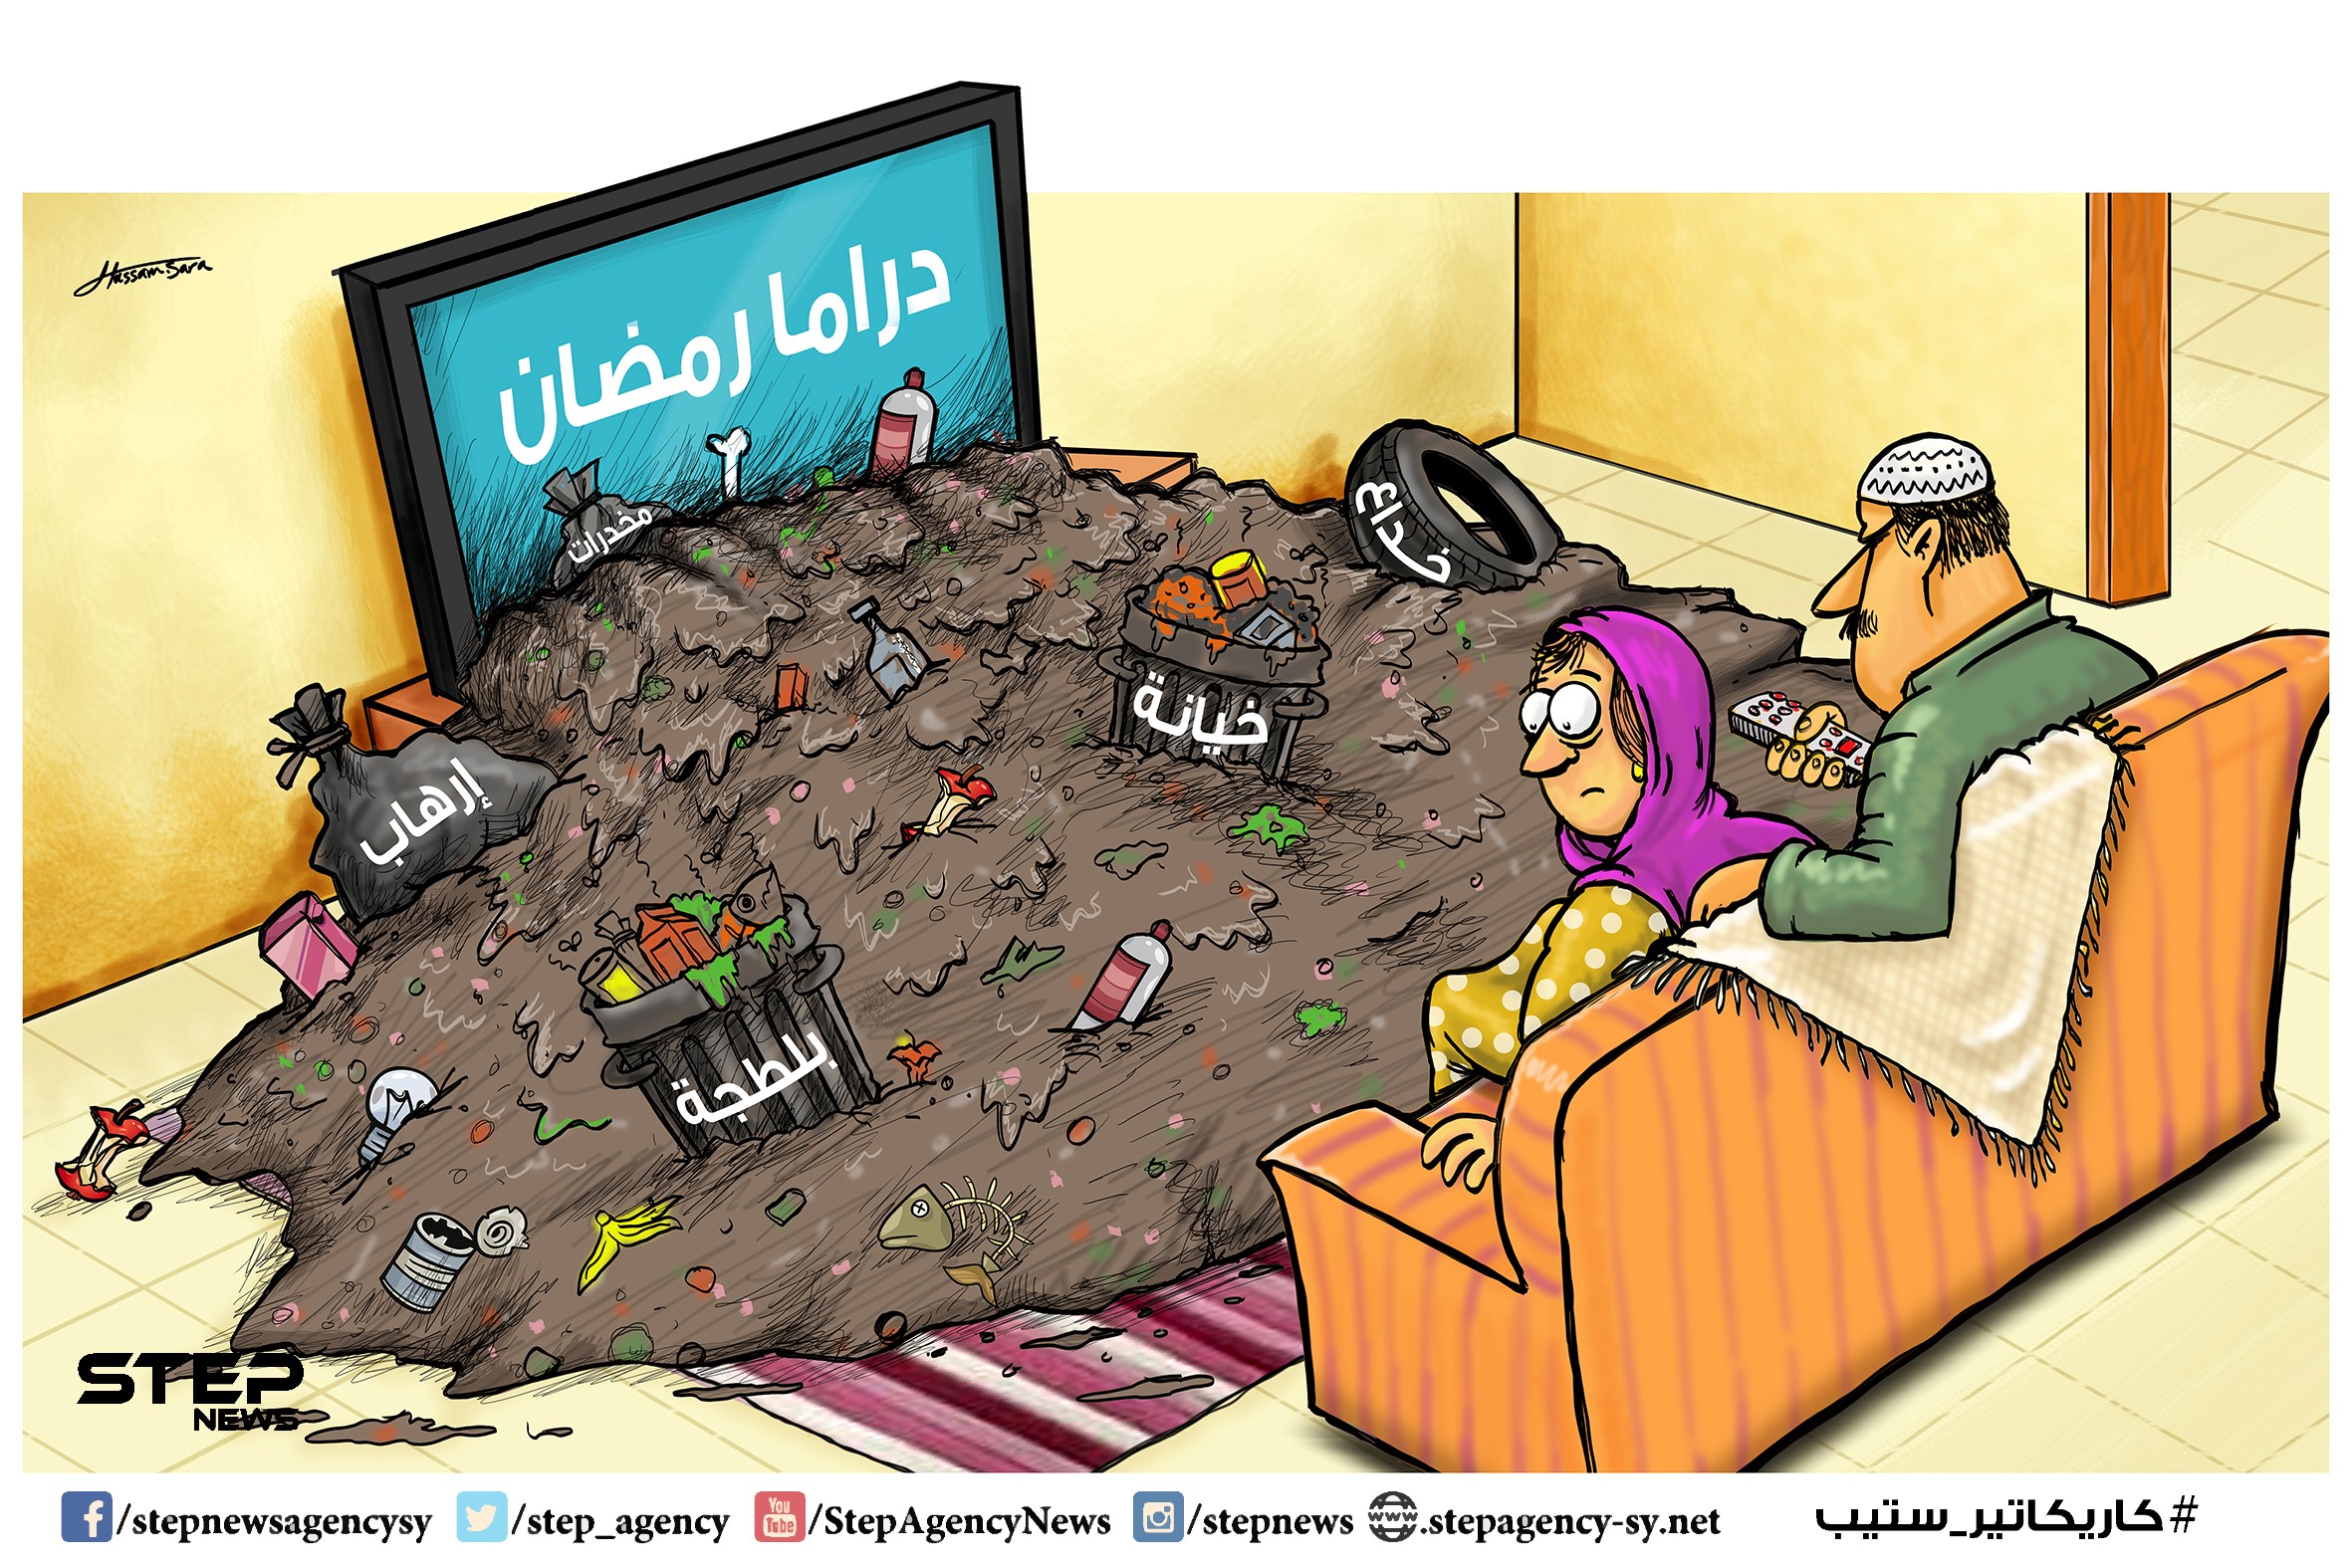 دراما رمضان/ كاريكاتير وكالة ستيب